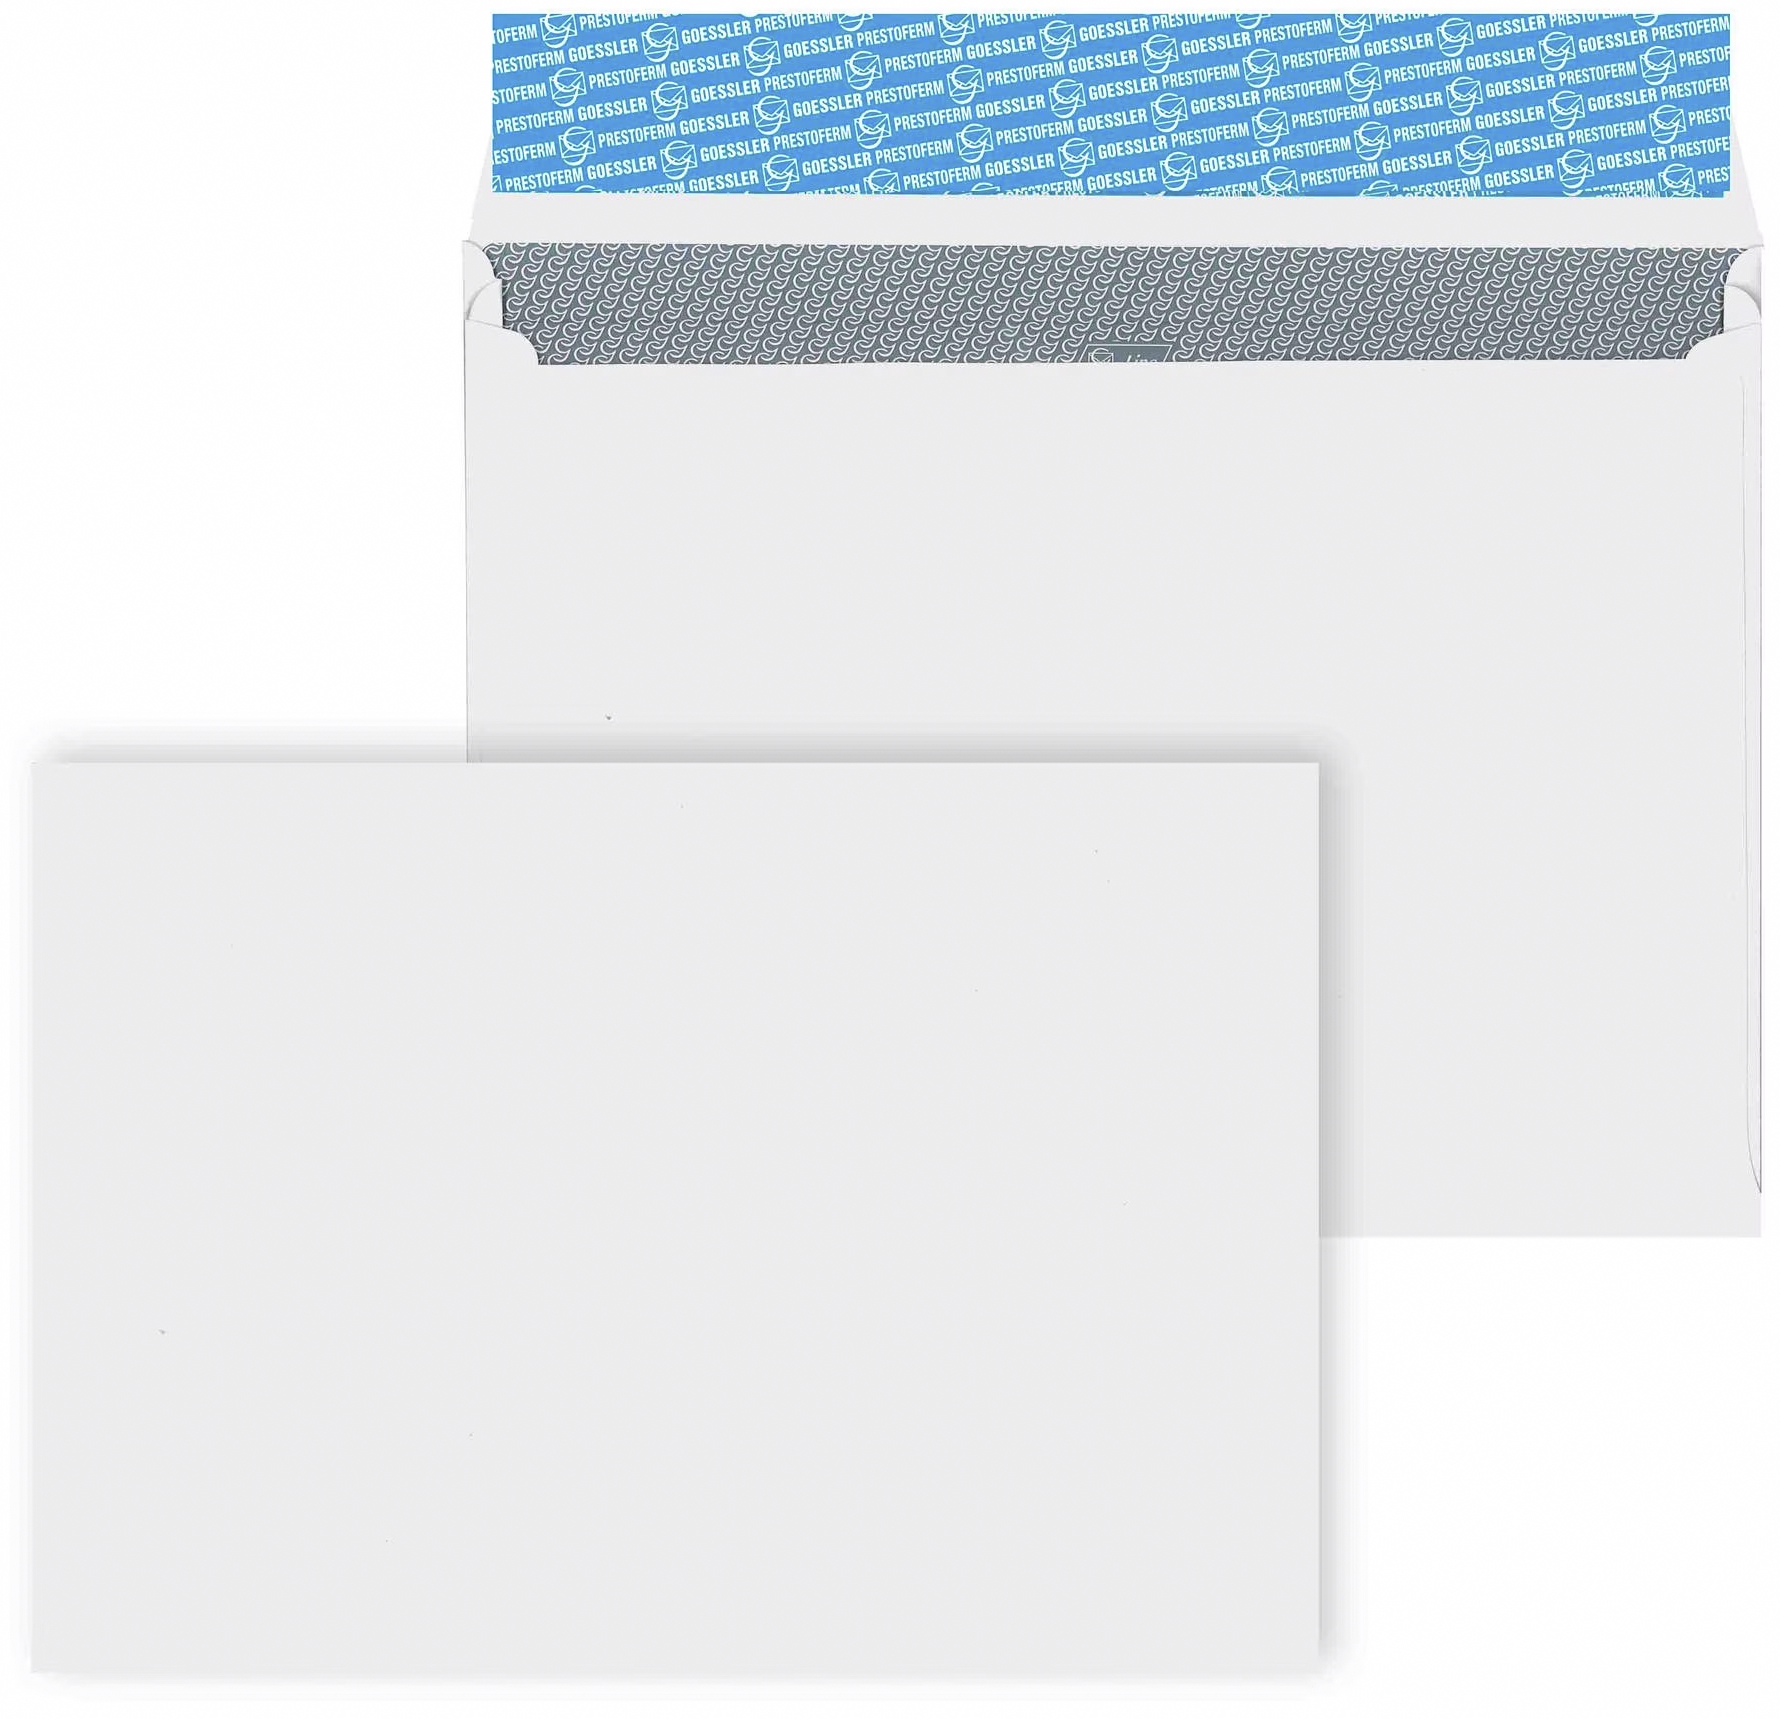 GOESSLER Enveloppe Expanso s/fenêtre C4 2093 120g/blanc/souff.lat. 100 pcs.